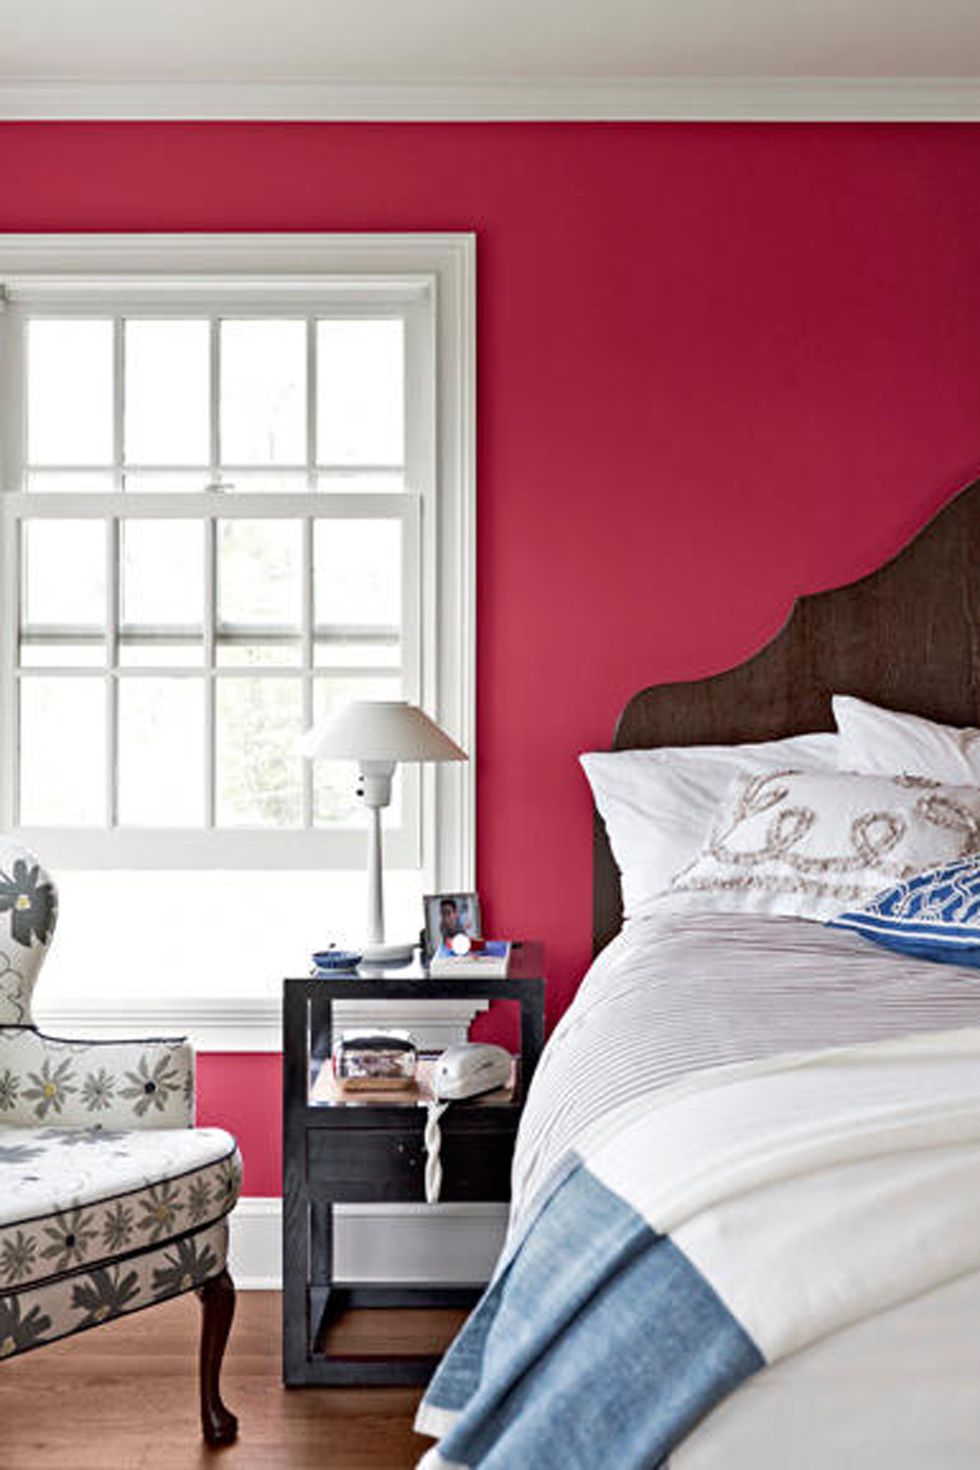 Bedroom, Furniture, Room, Bed, Interior design, Bed sheet, Bed frame, Blue, Wall, Red, 